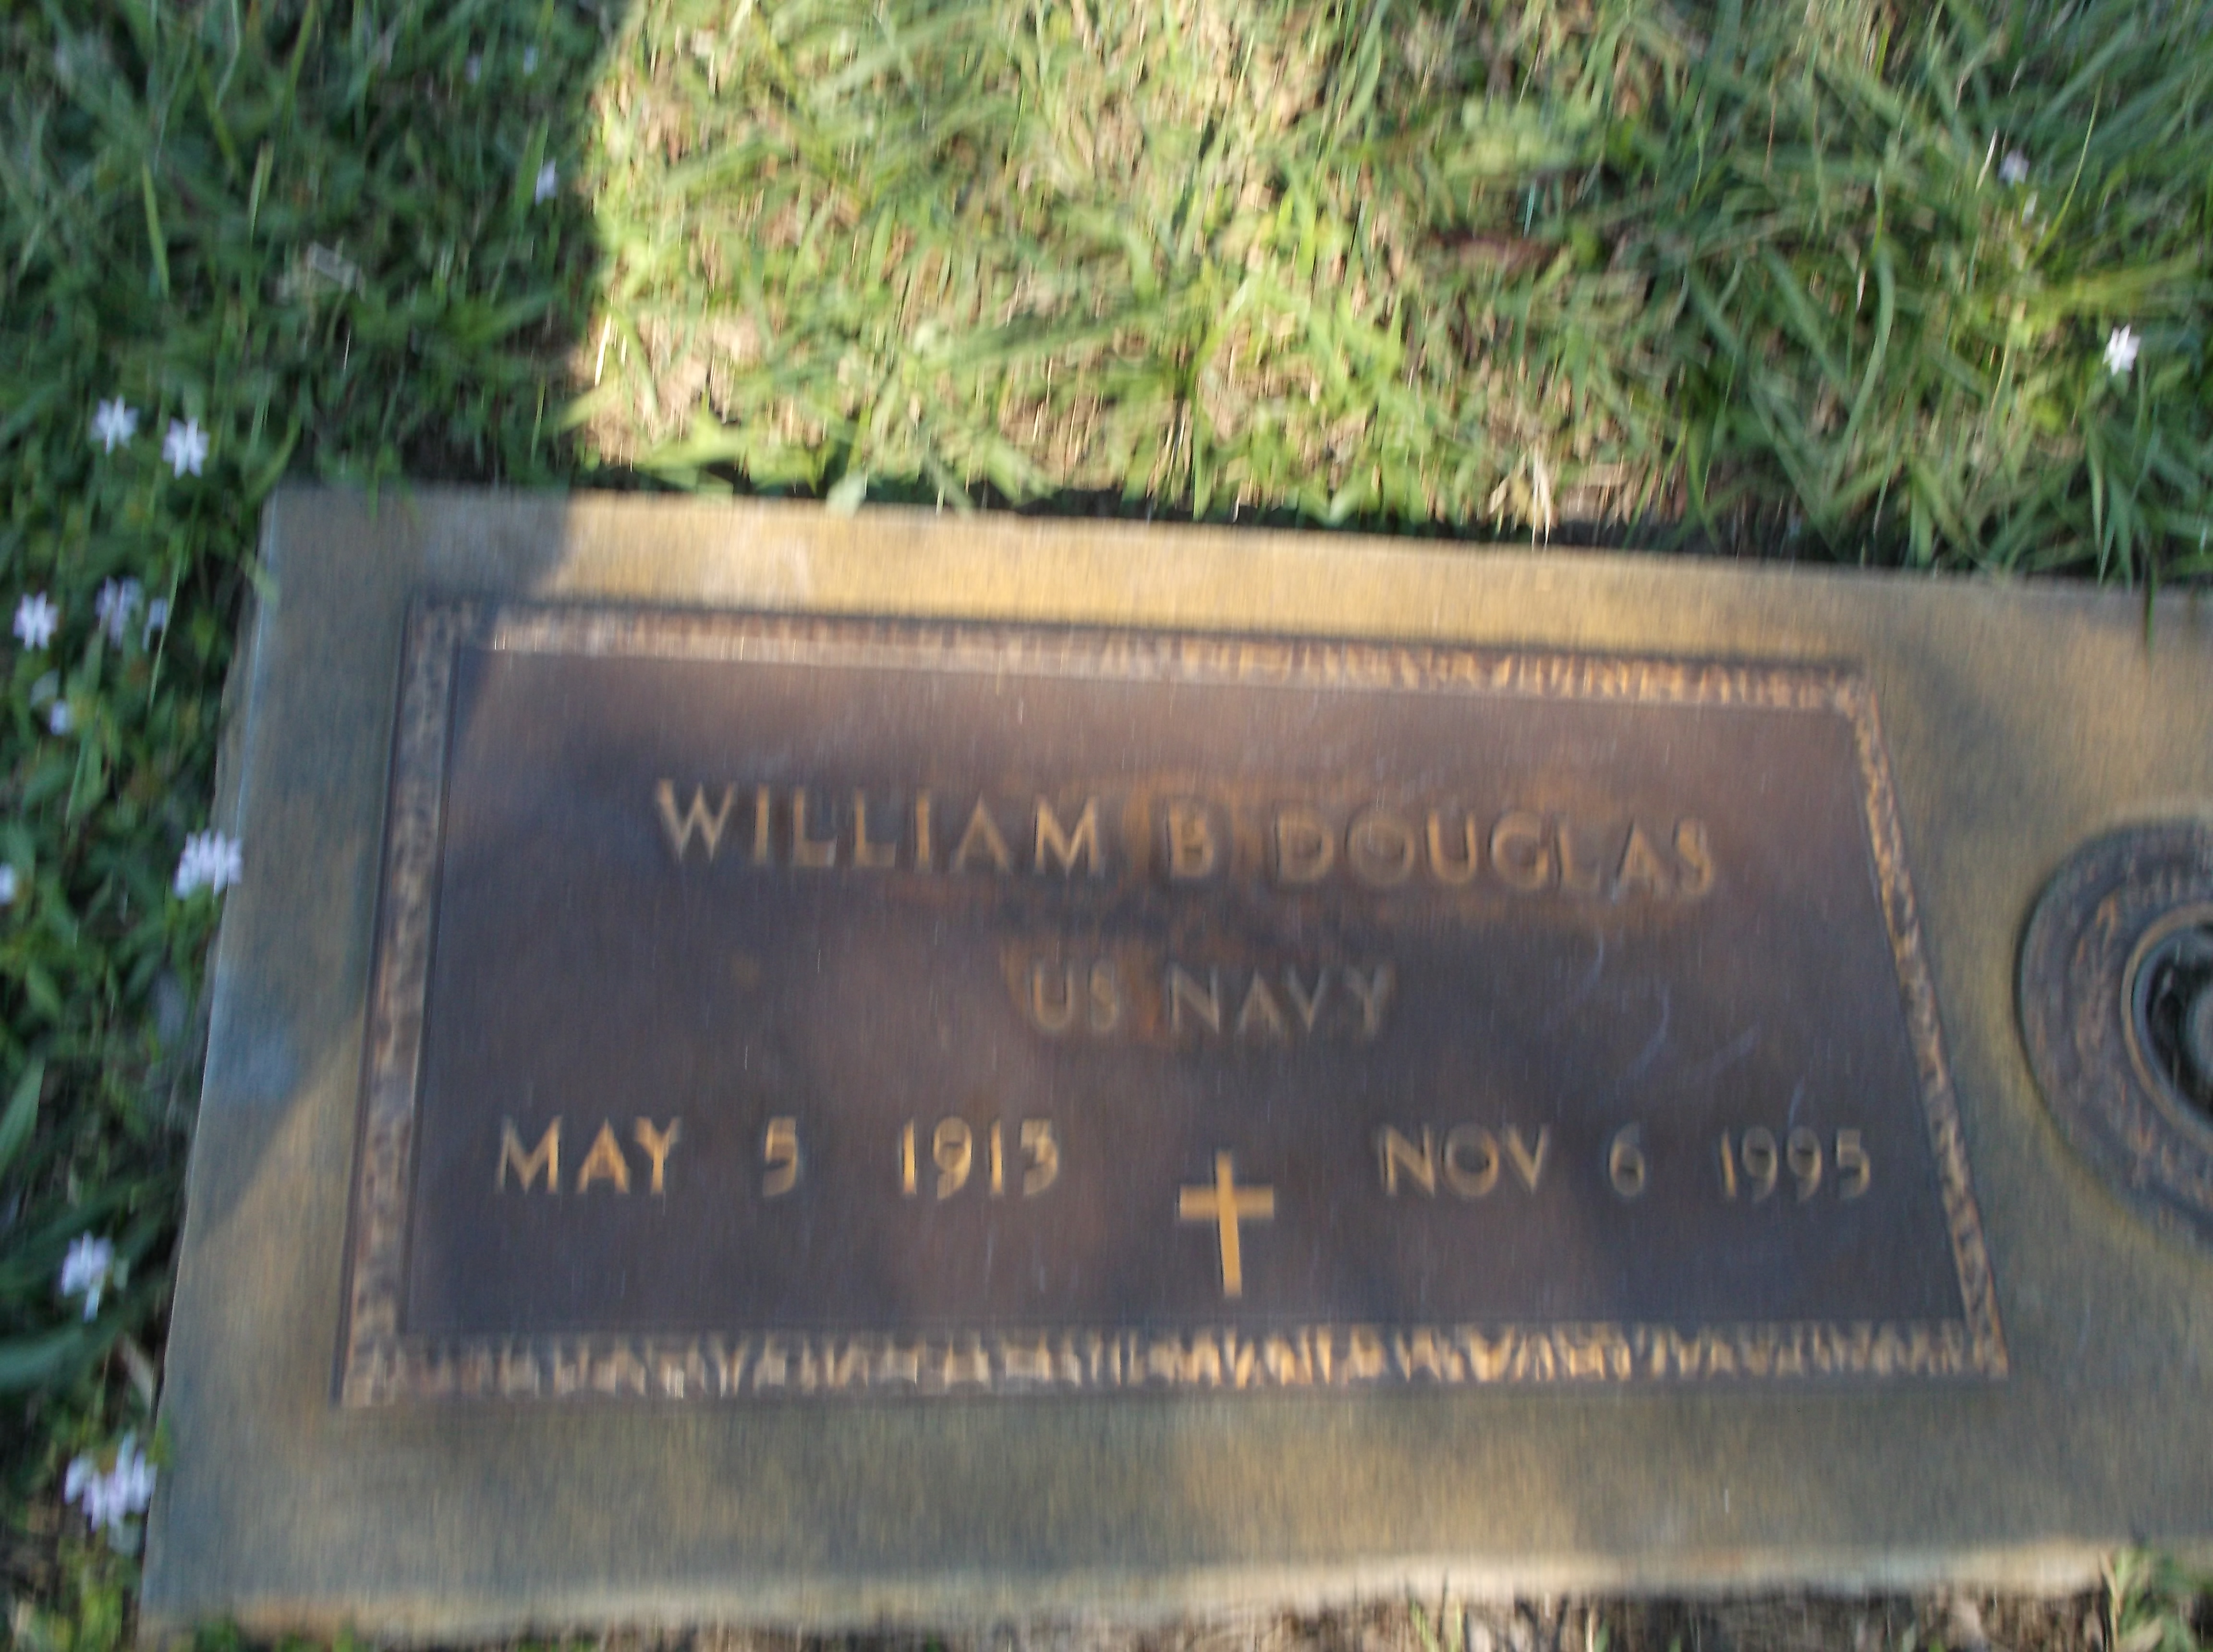 William B Douglas